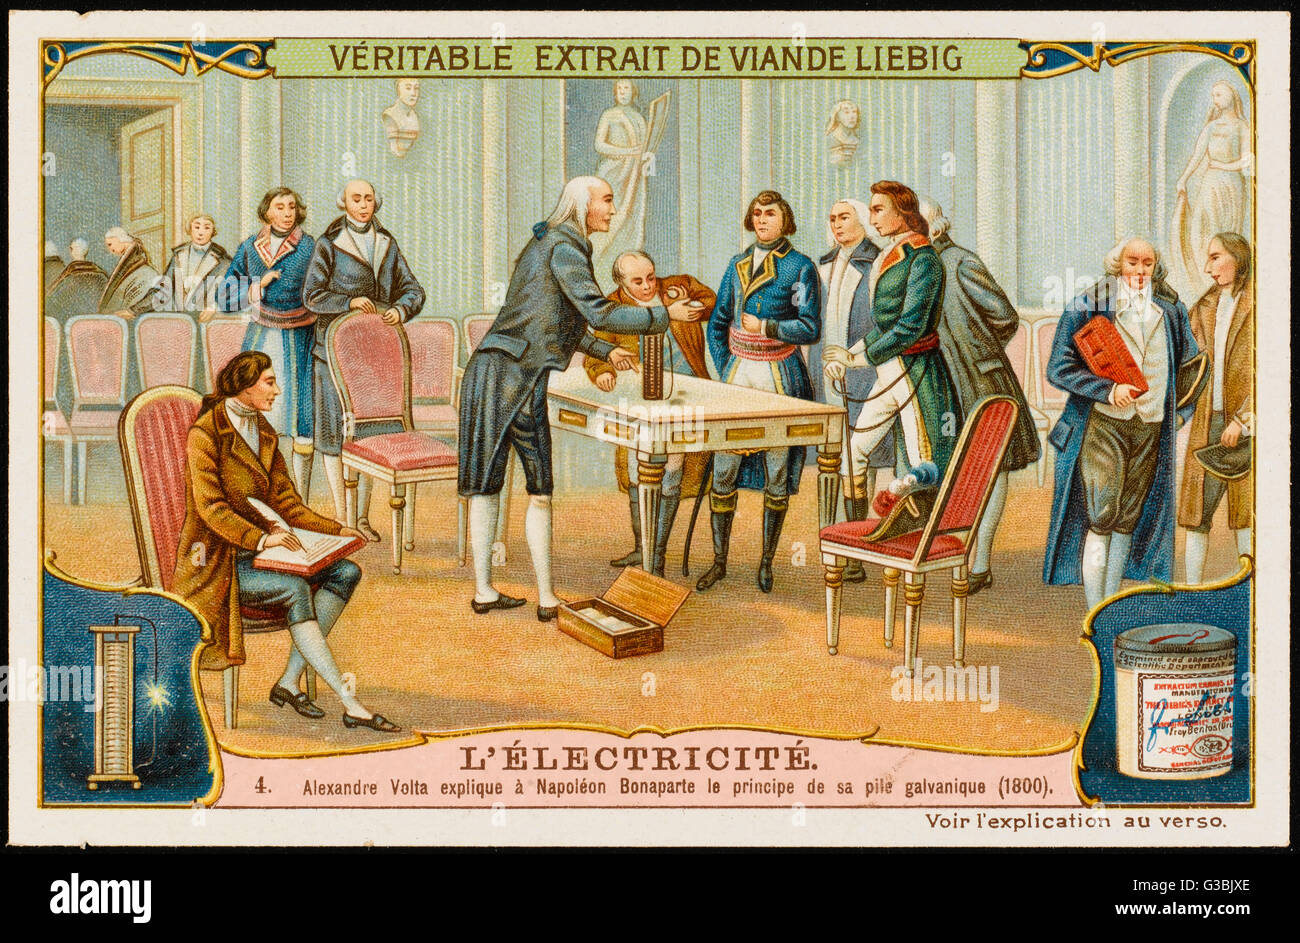 Alessandro Volta zeigt ich Napoleon seine "Voltasche" - eine Batterie speichern die Kraft, die durch einen Elektromotor erzeugt.      Datum: 1800 Stockfoto